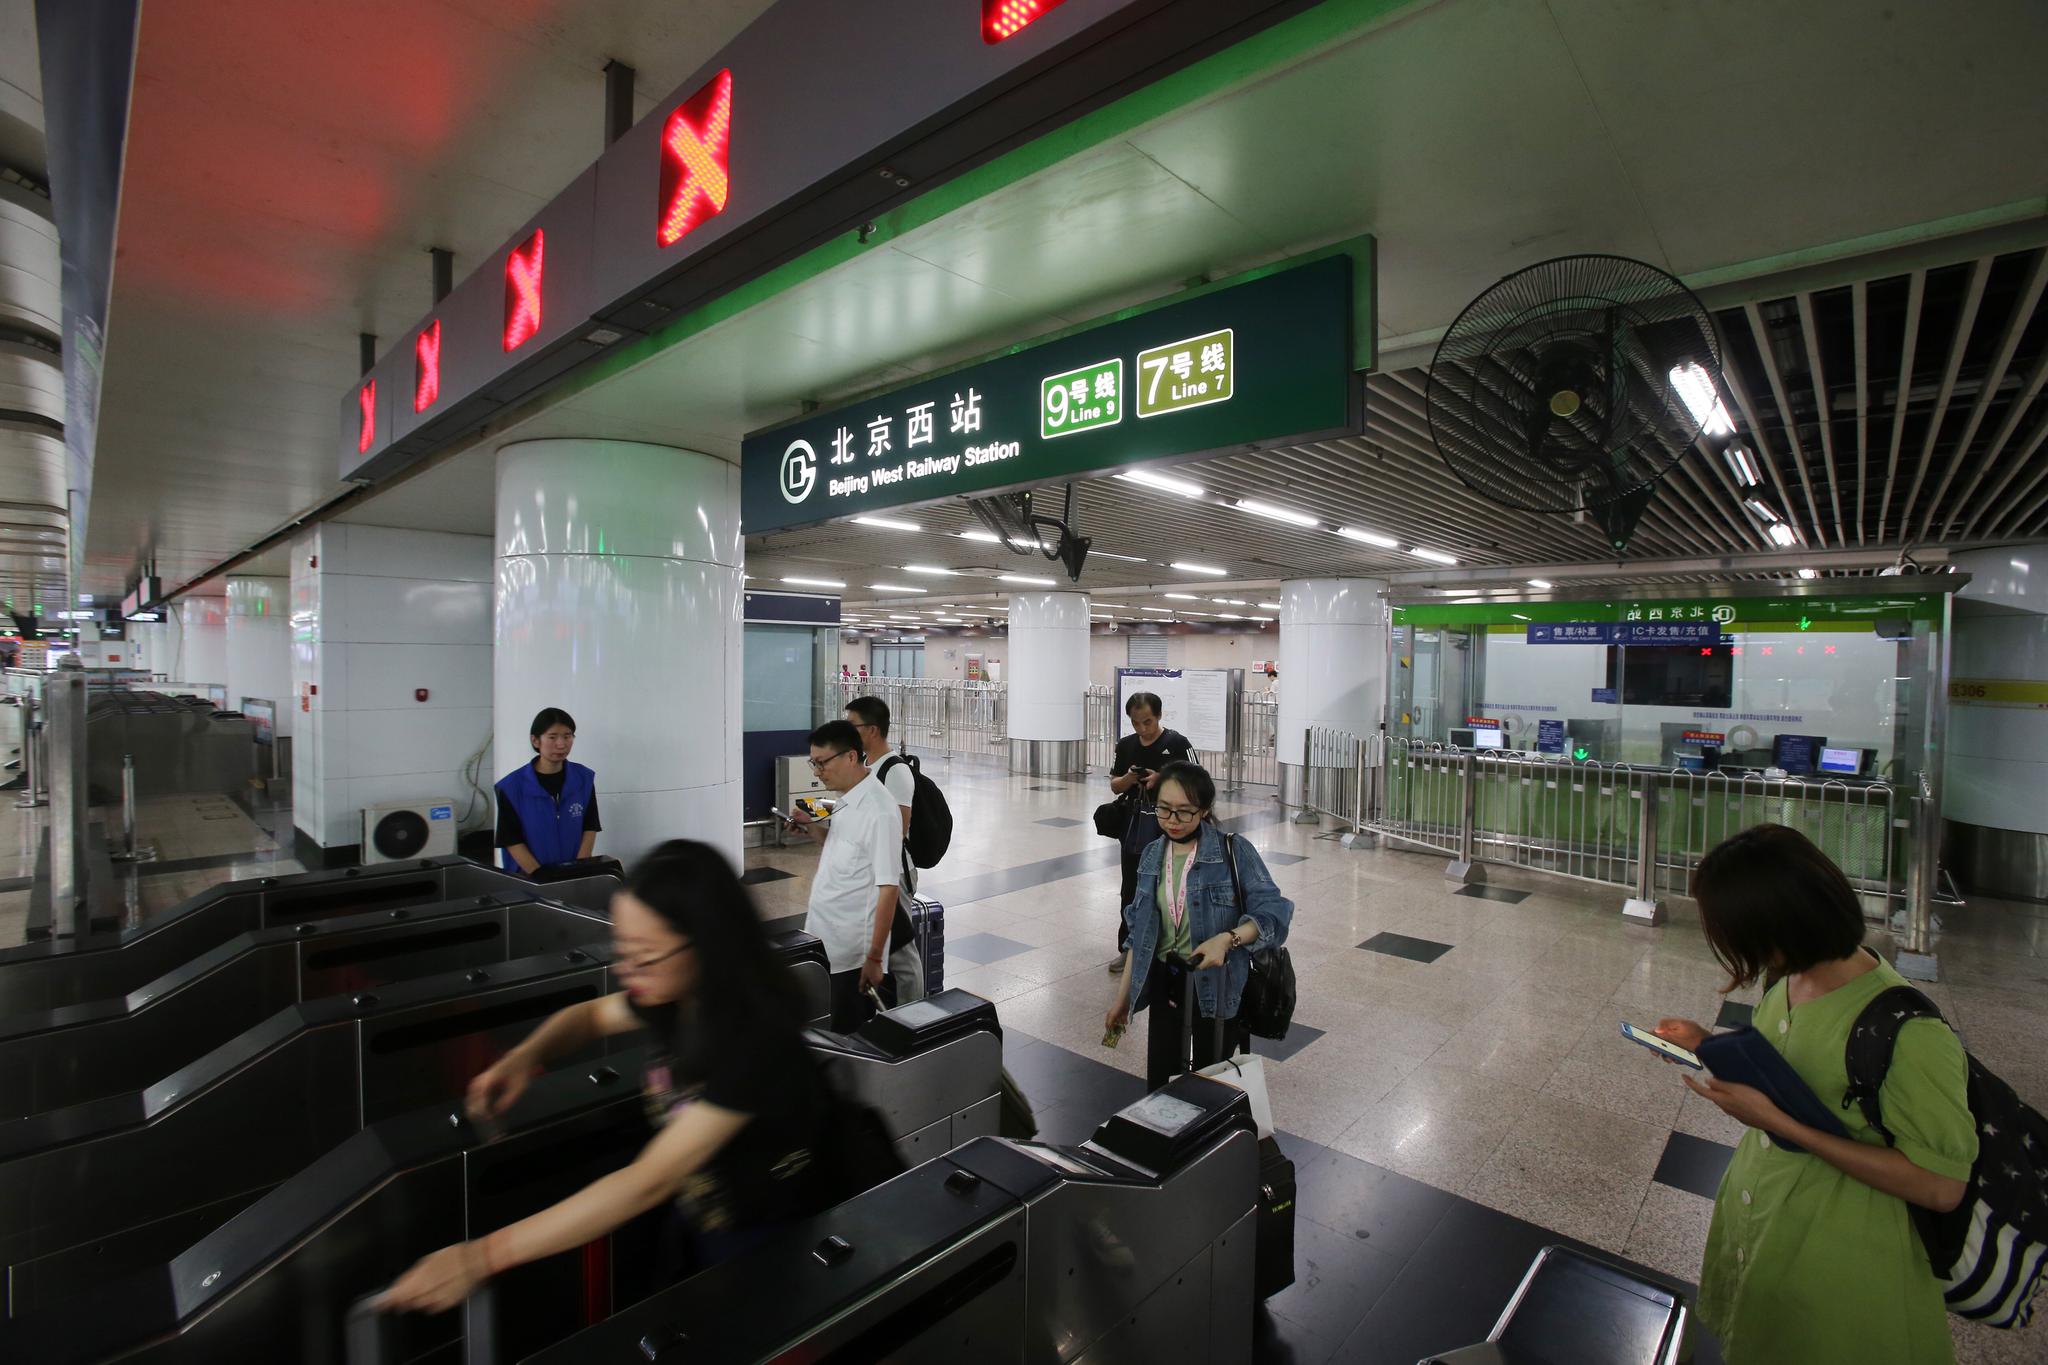 五一特辑丨北京地铁站线上的守护者 -千龙网·中国首都网